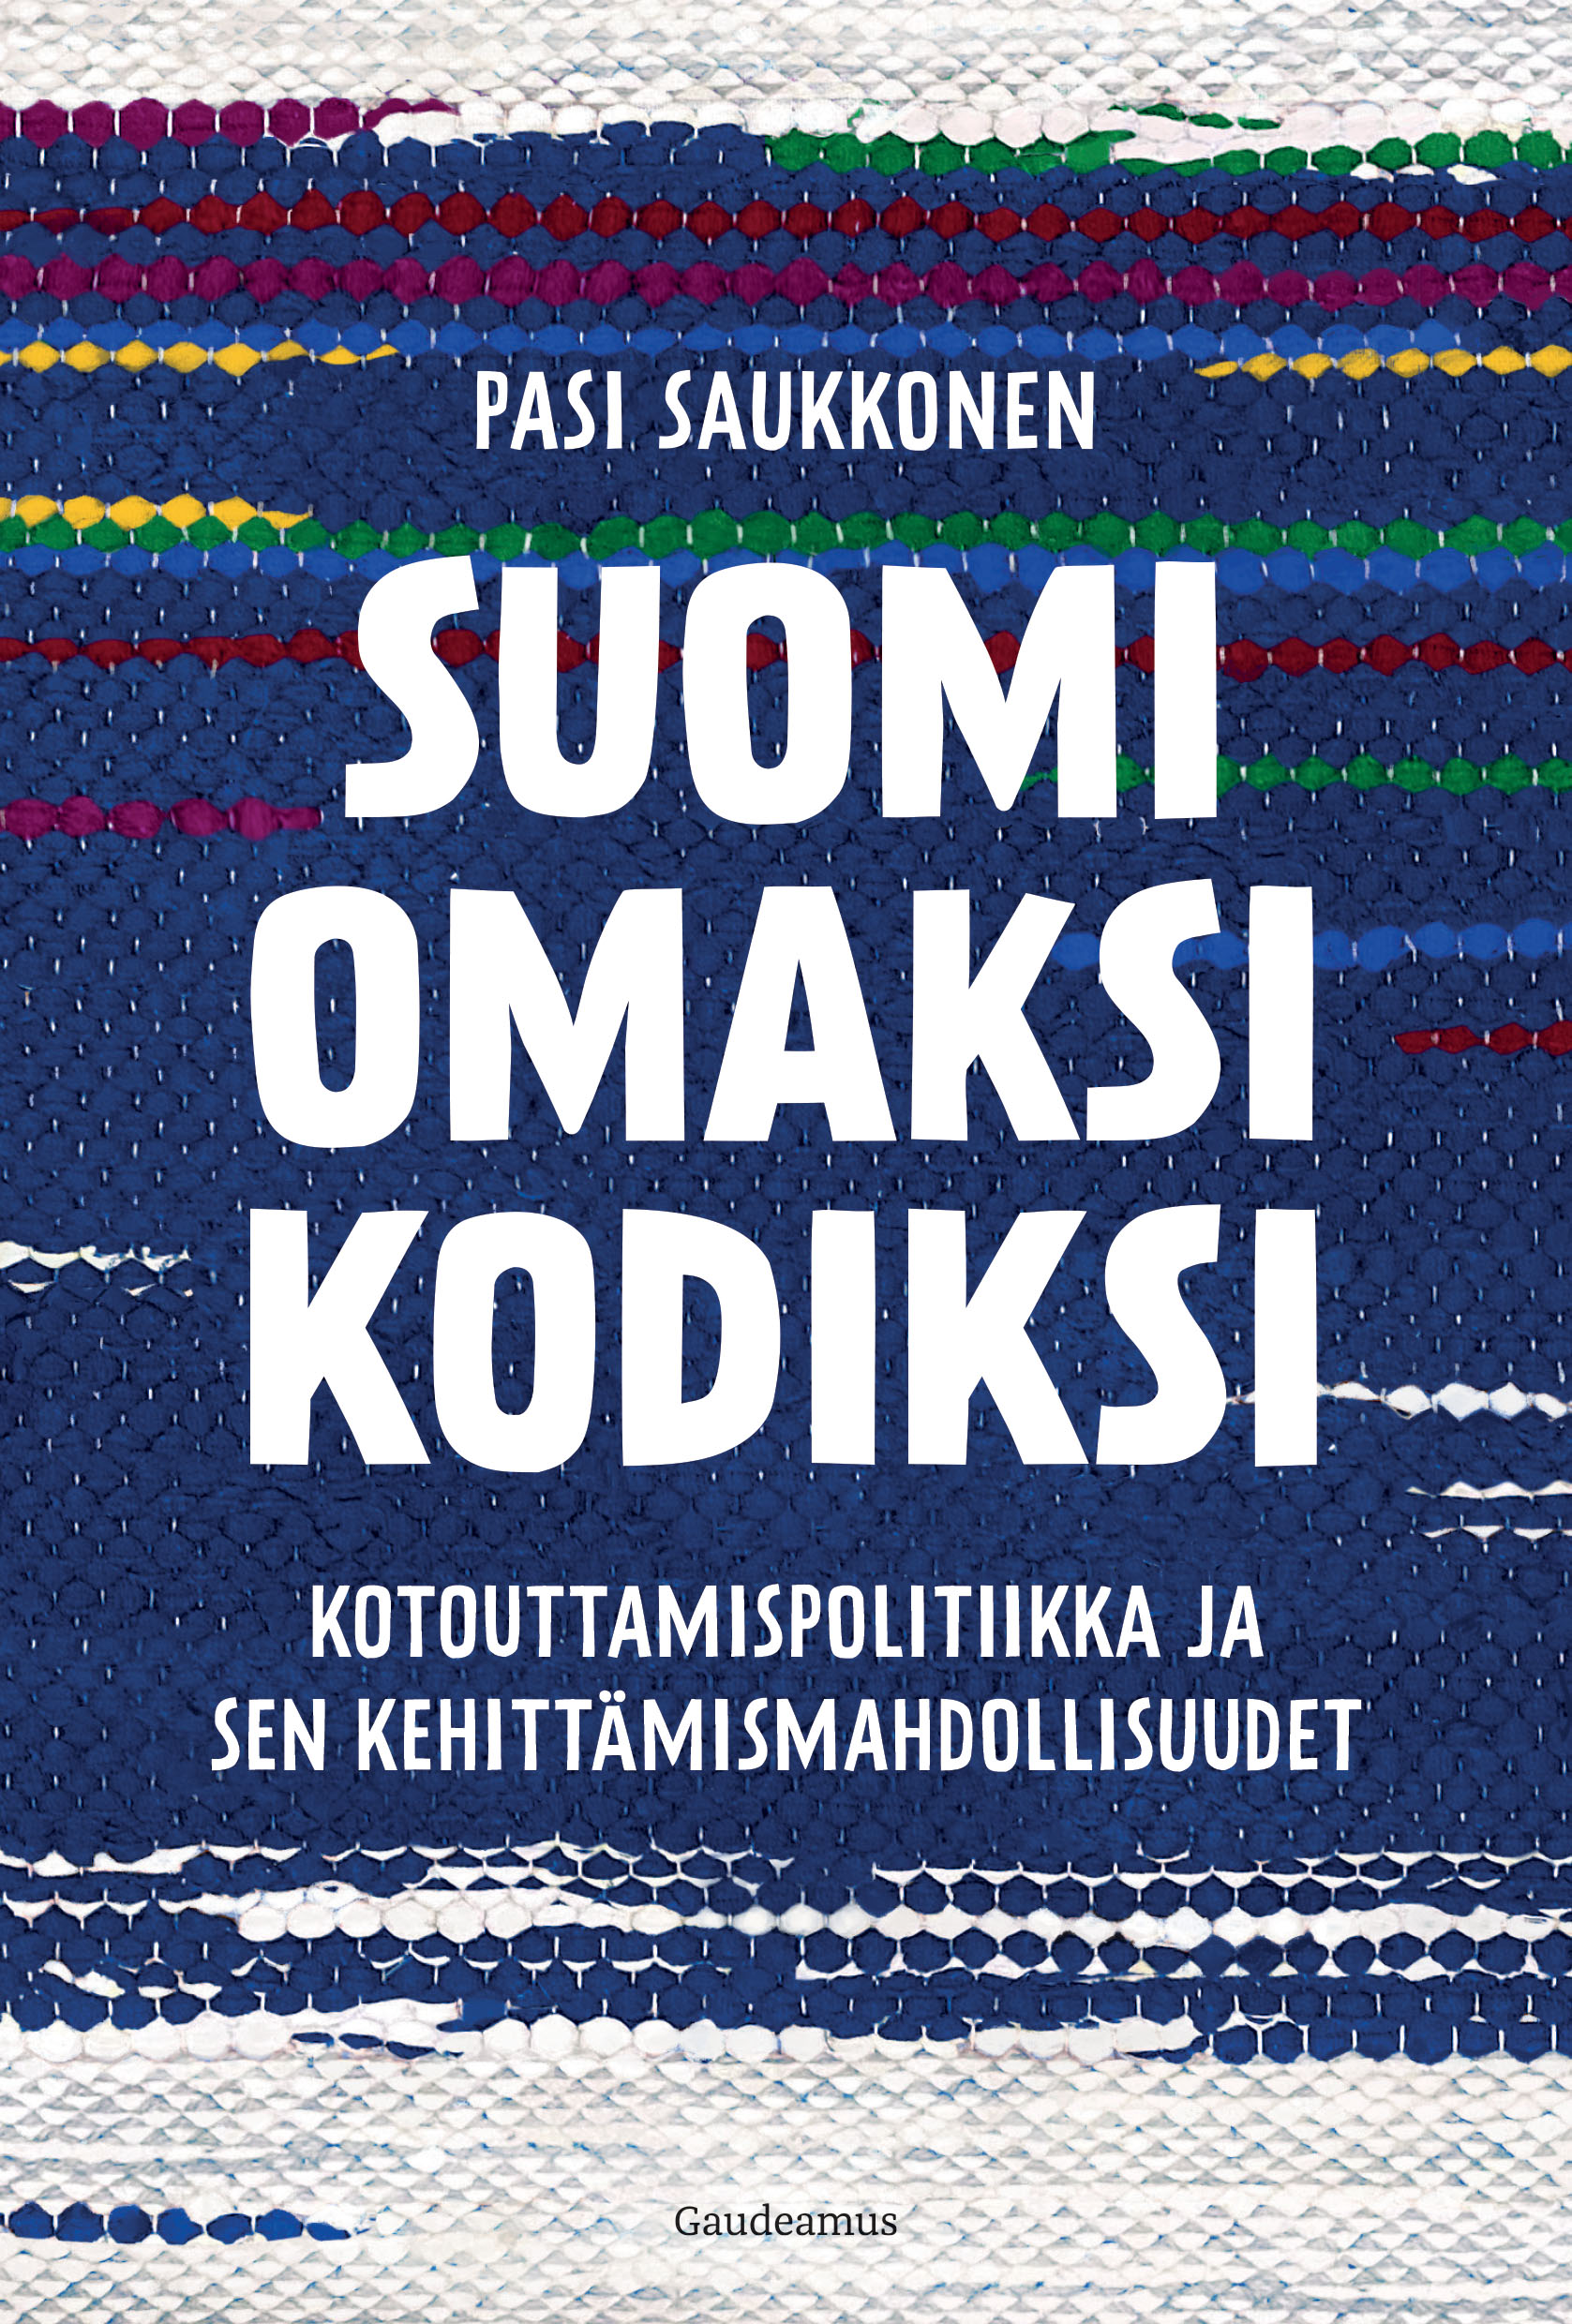 Saukkonen, Pasi - Suomi omaksi kodiksi: Kotouttamispolitiikka ja sen kehittämismahdollisuudet, e-kirja